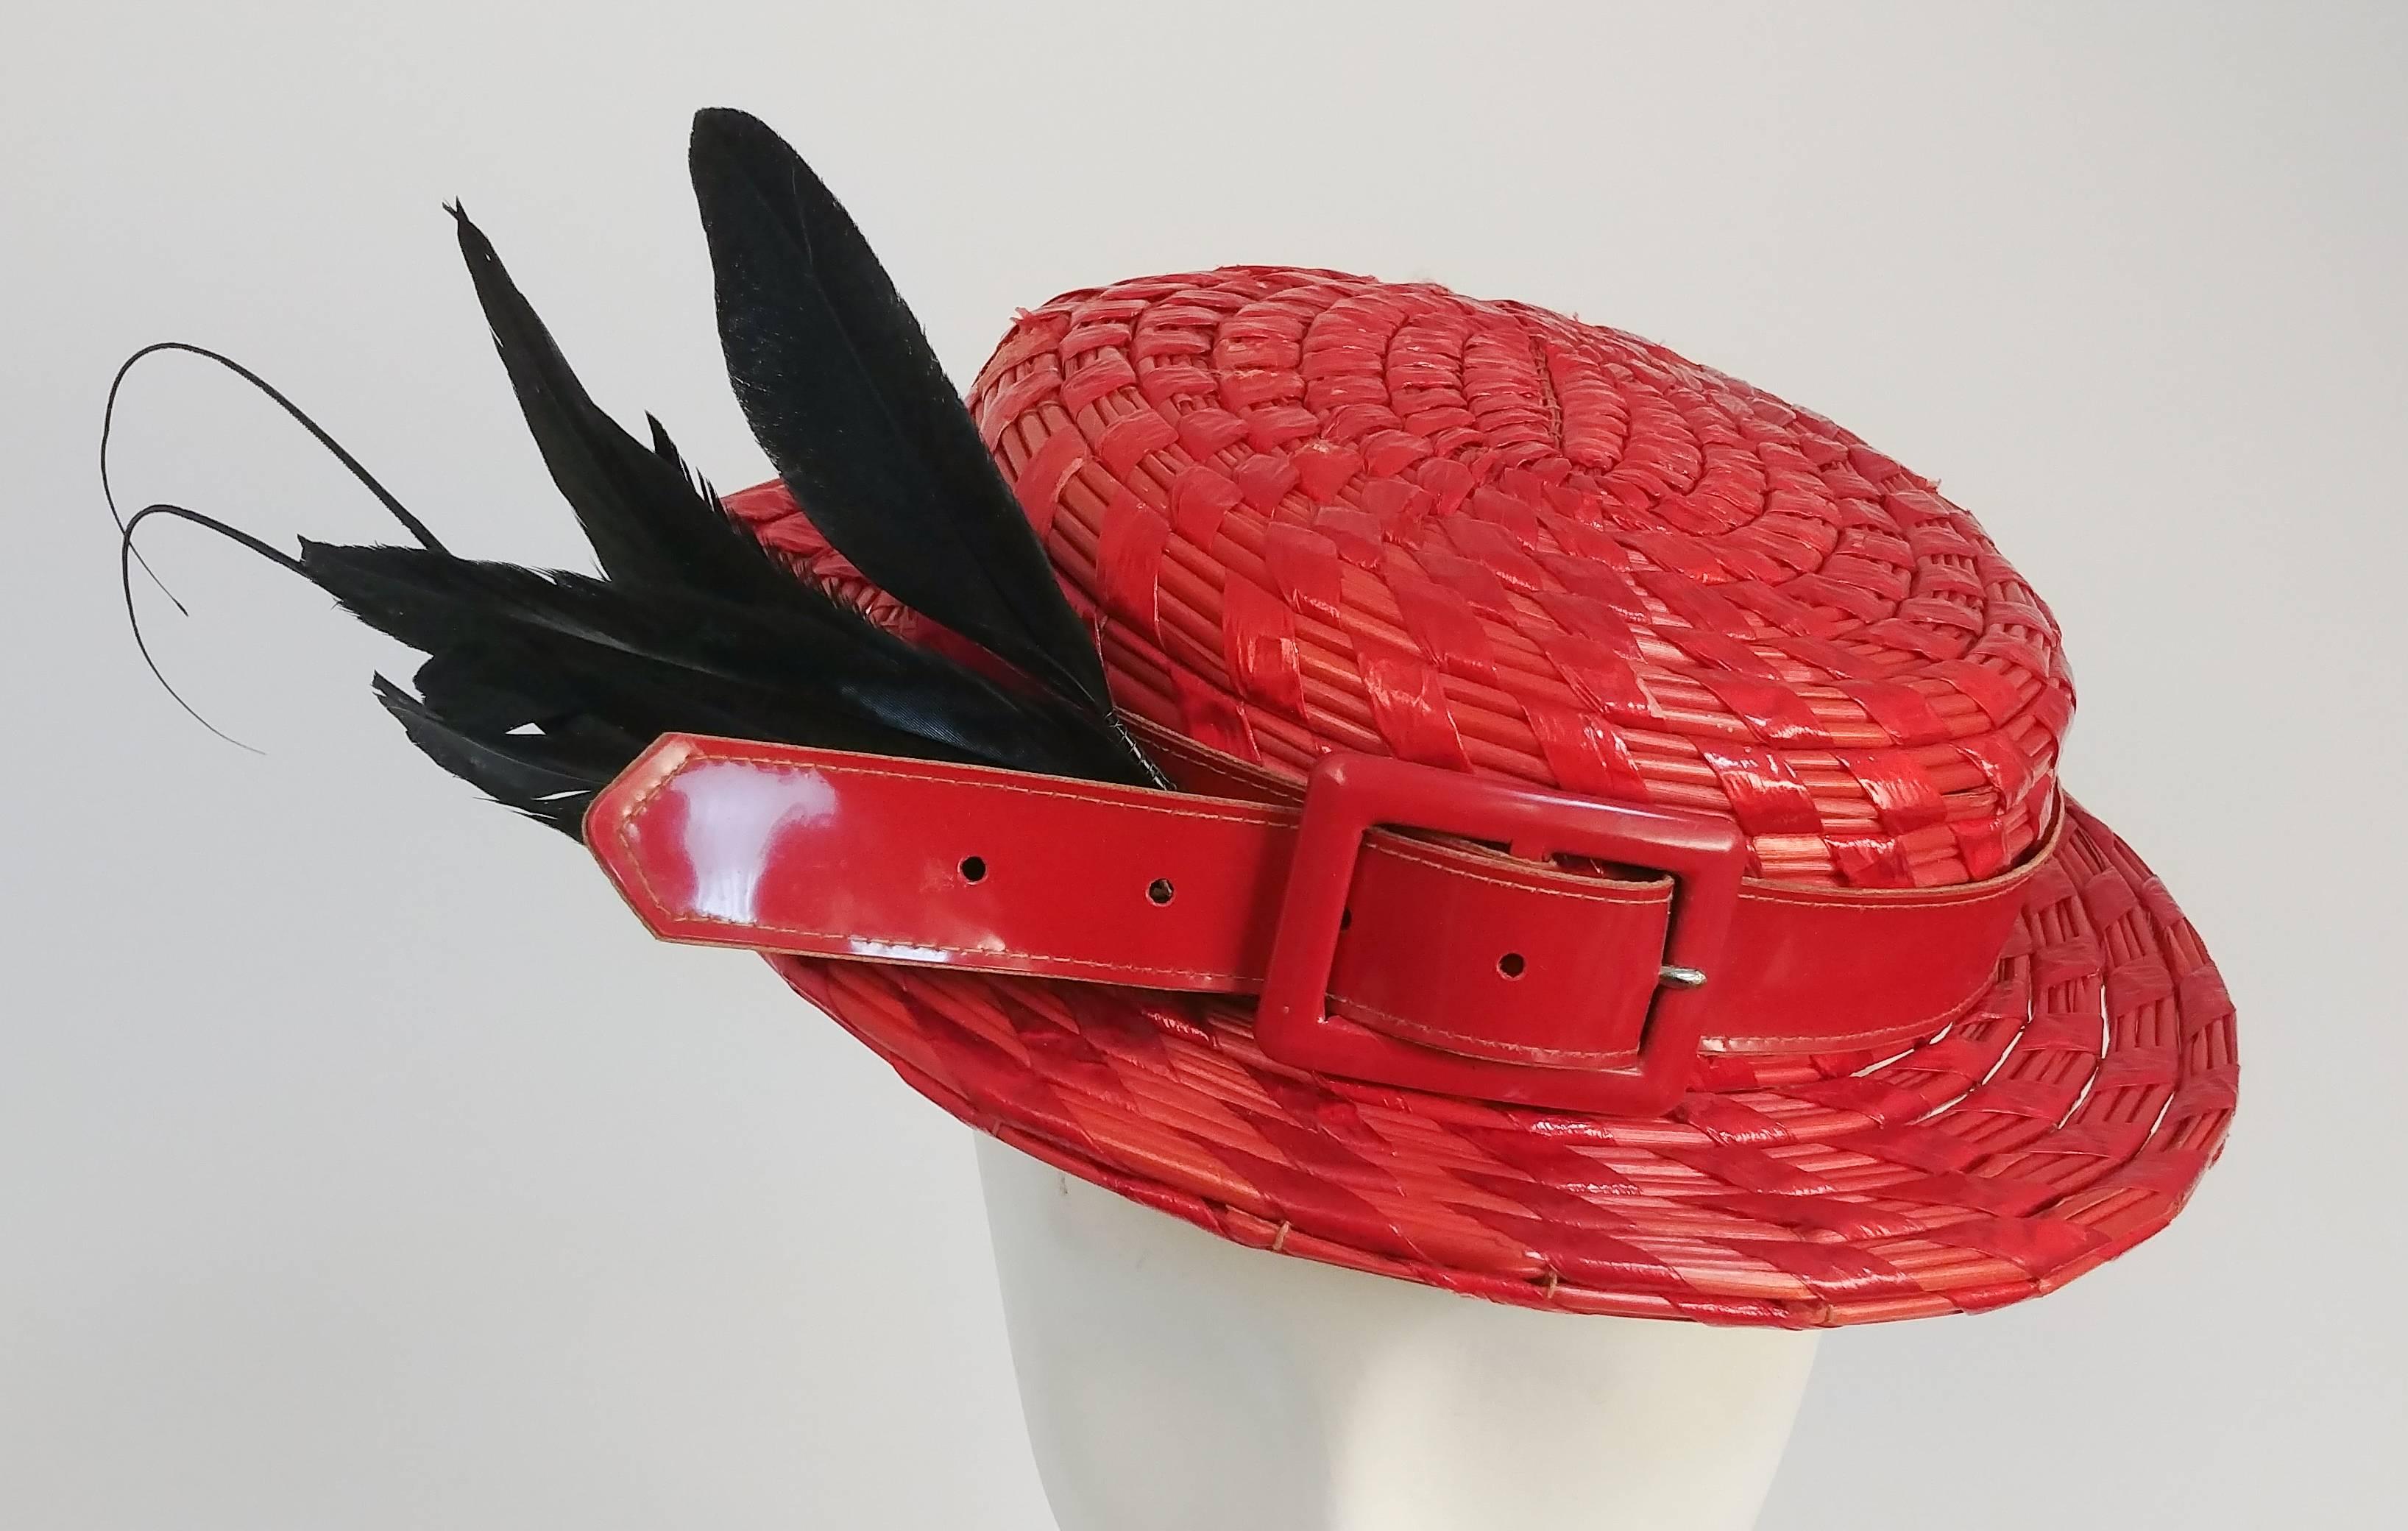 Chapeau rouge des années 1950 avec bandeau en cuir verni et plumes. Chapeau rouge tissé avec une ceinture en cuir verni rouge en guise de bandeau et des plumes noires tournées vers un côté. Heldly à l'arrière de la tête avec un élastique.